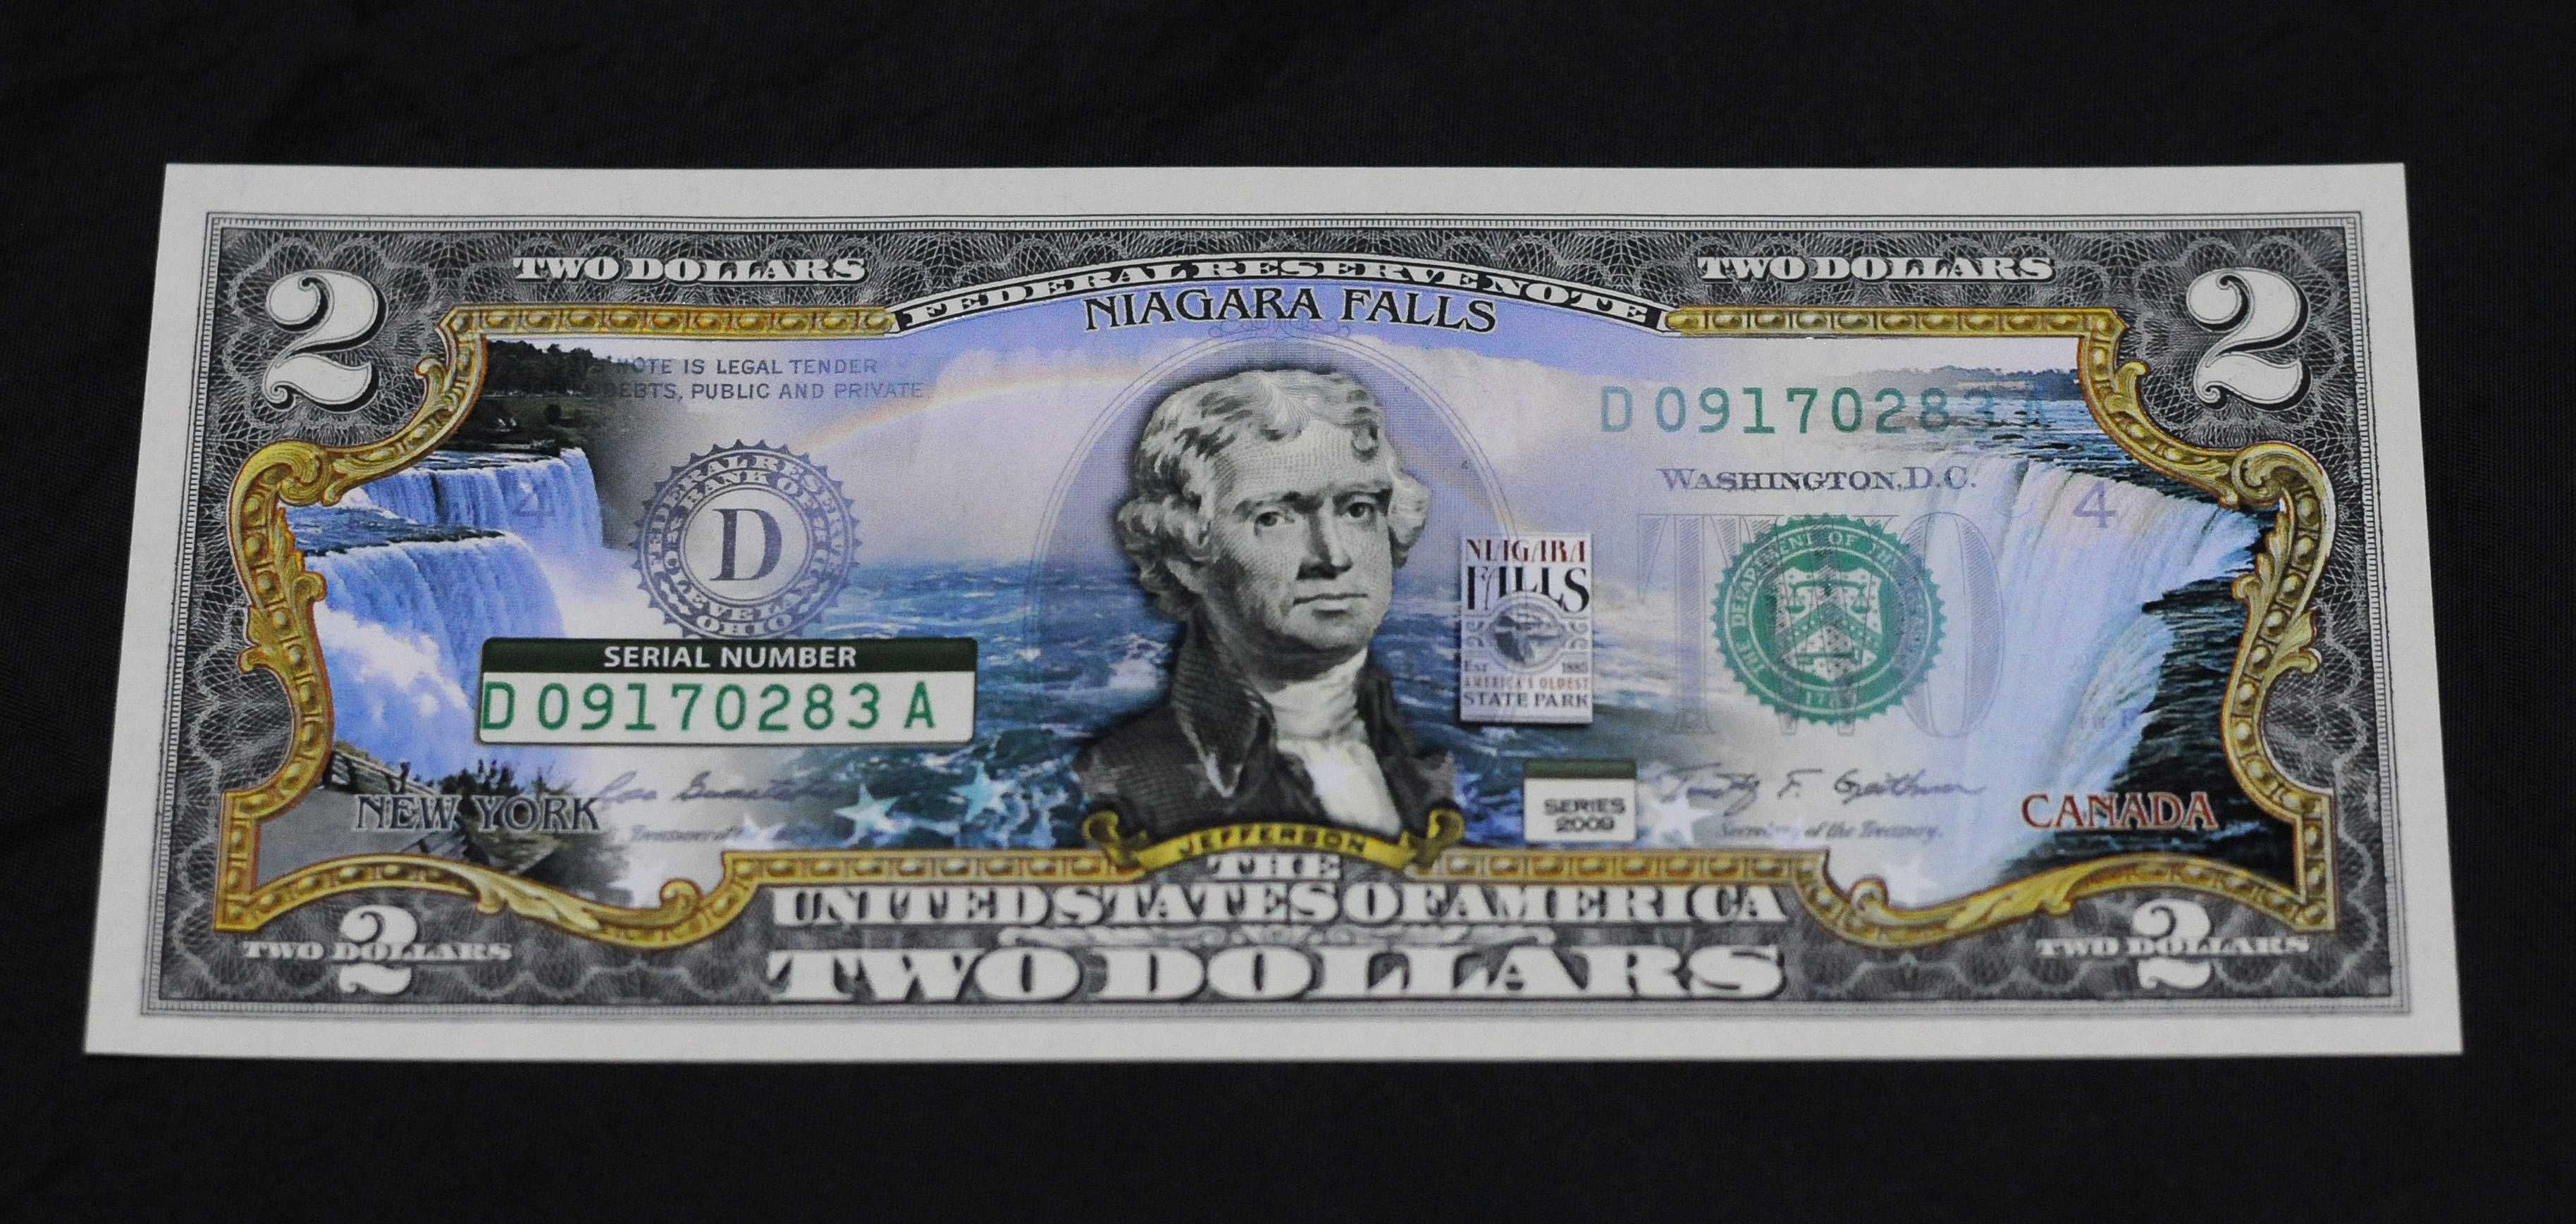 Банкнота $2 - colorized Niagara Falls или Grand  Canyon National Park